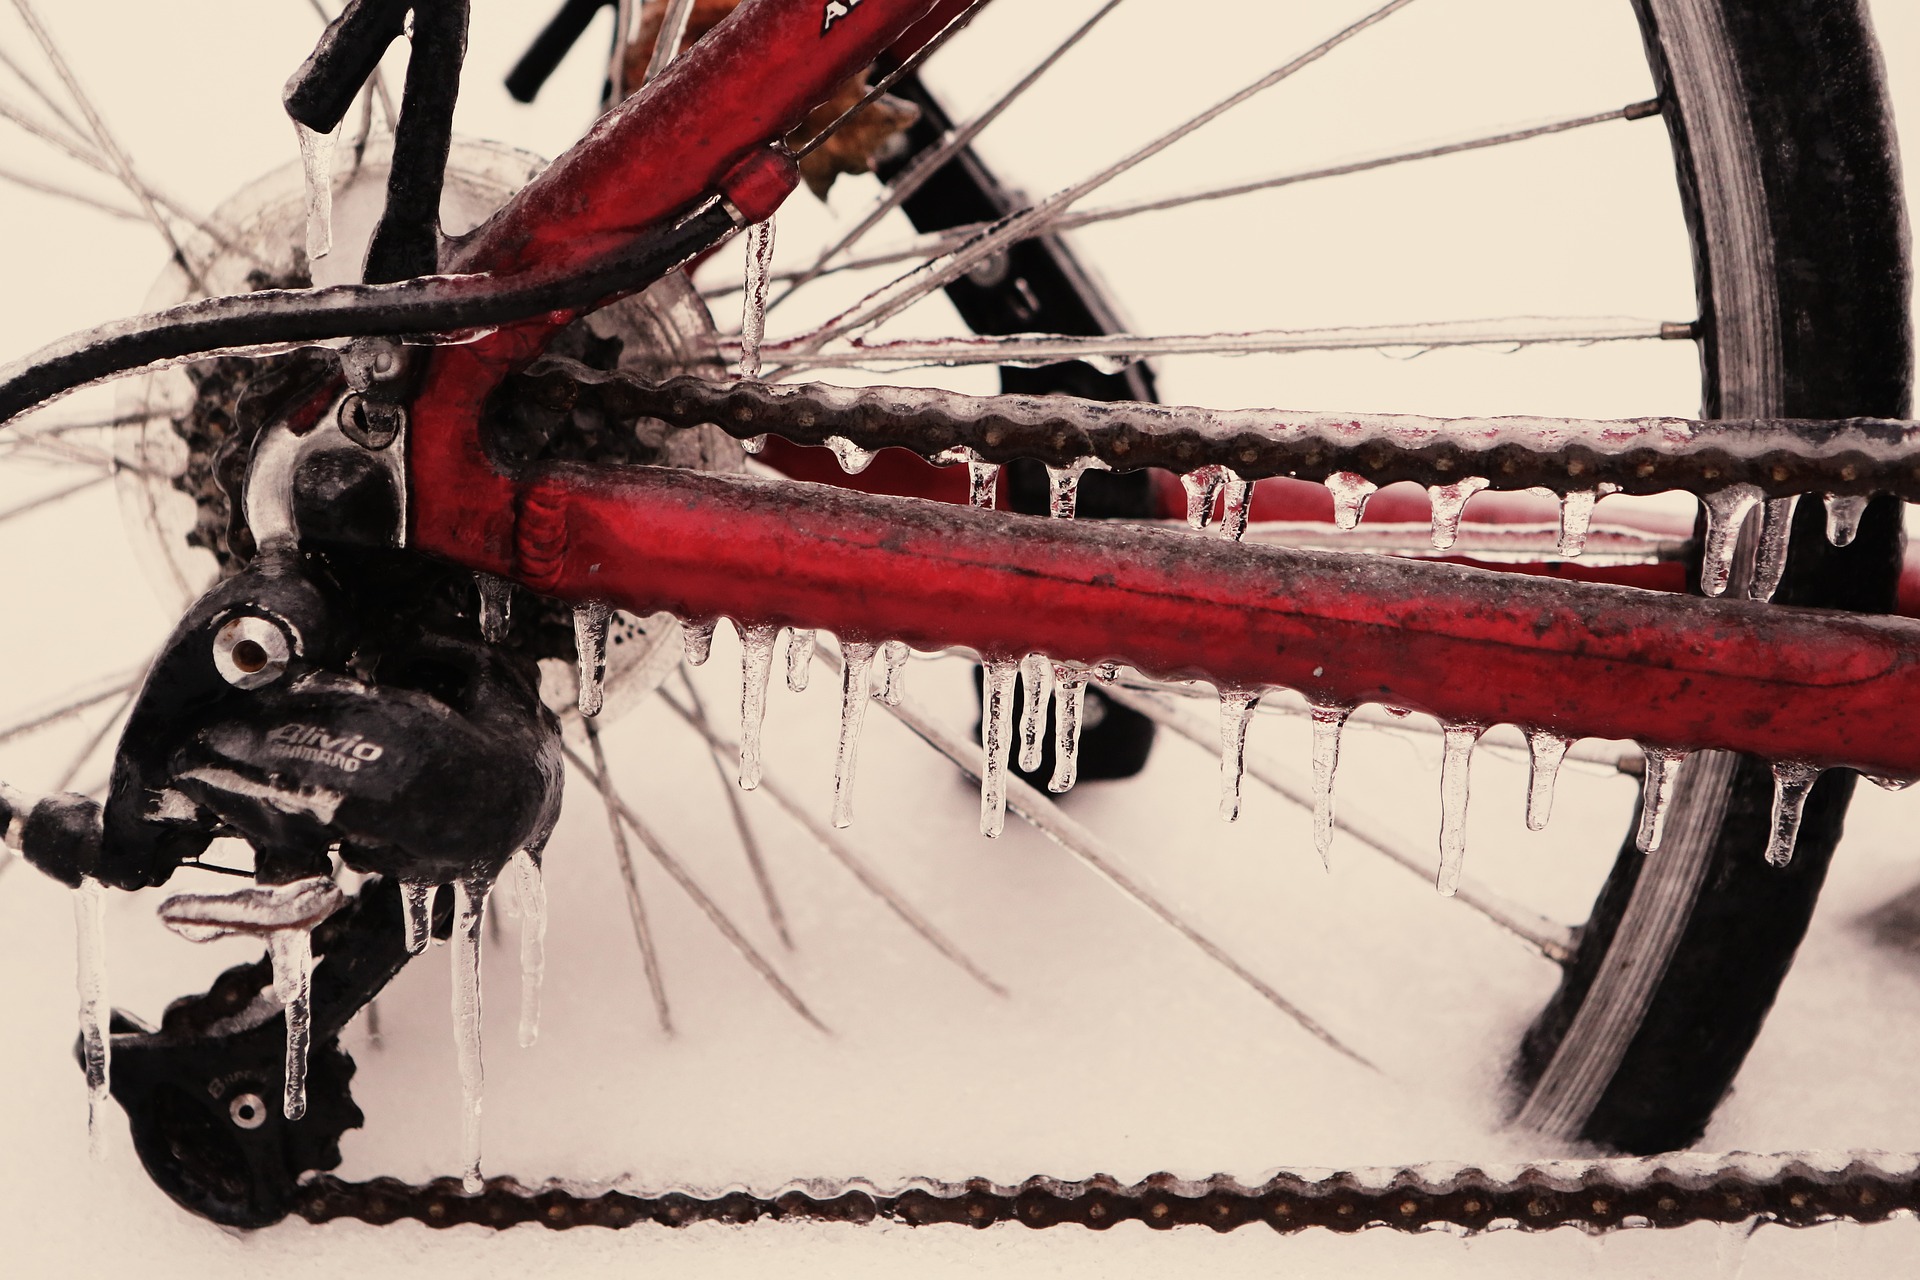 Bild von einem Fahrrad mit rotem Rahmem. Es steht im Schnee und es sind Eiszapfen an Kette, Strebe, etc.